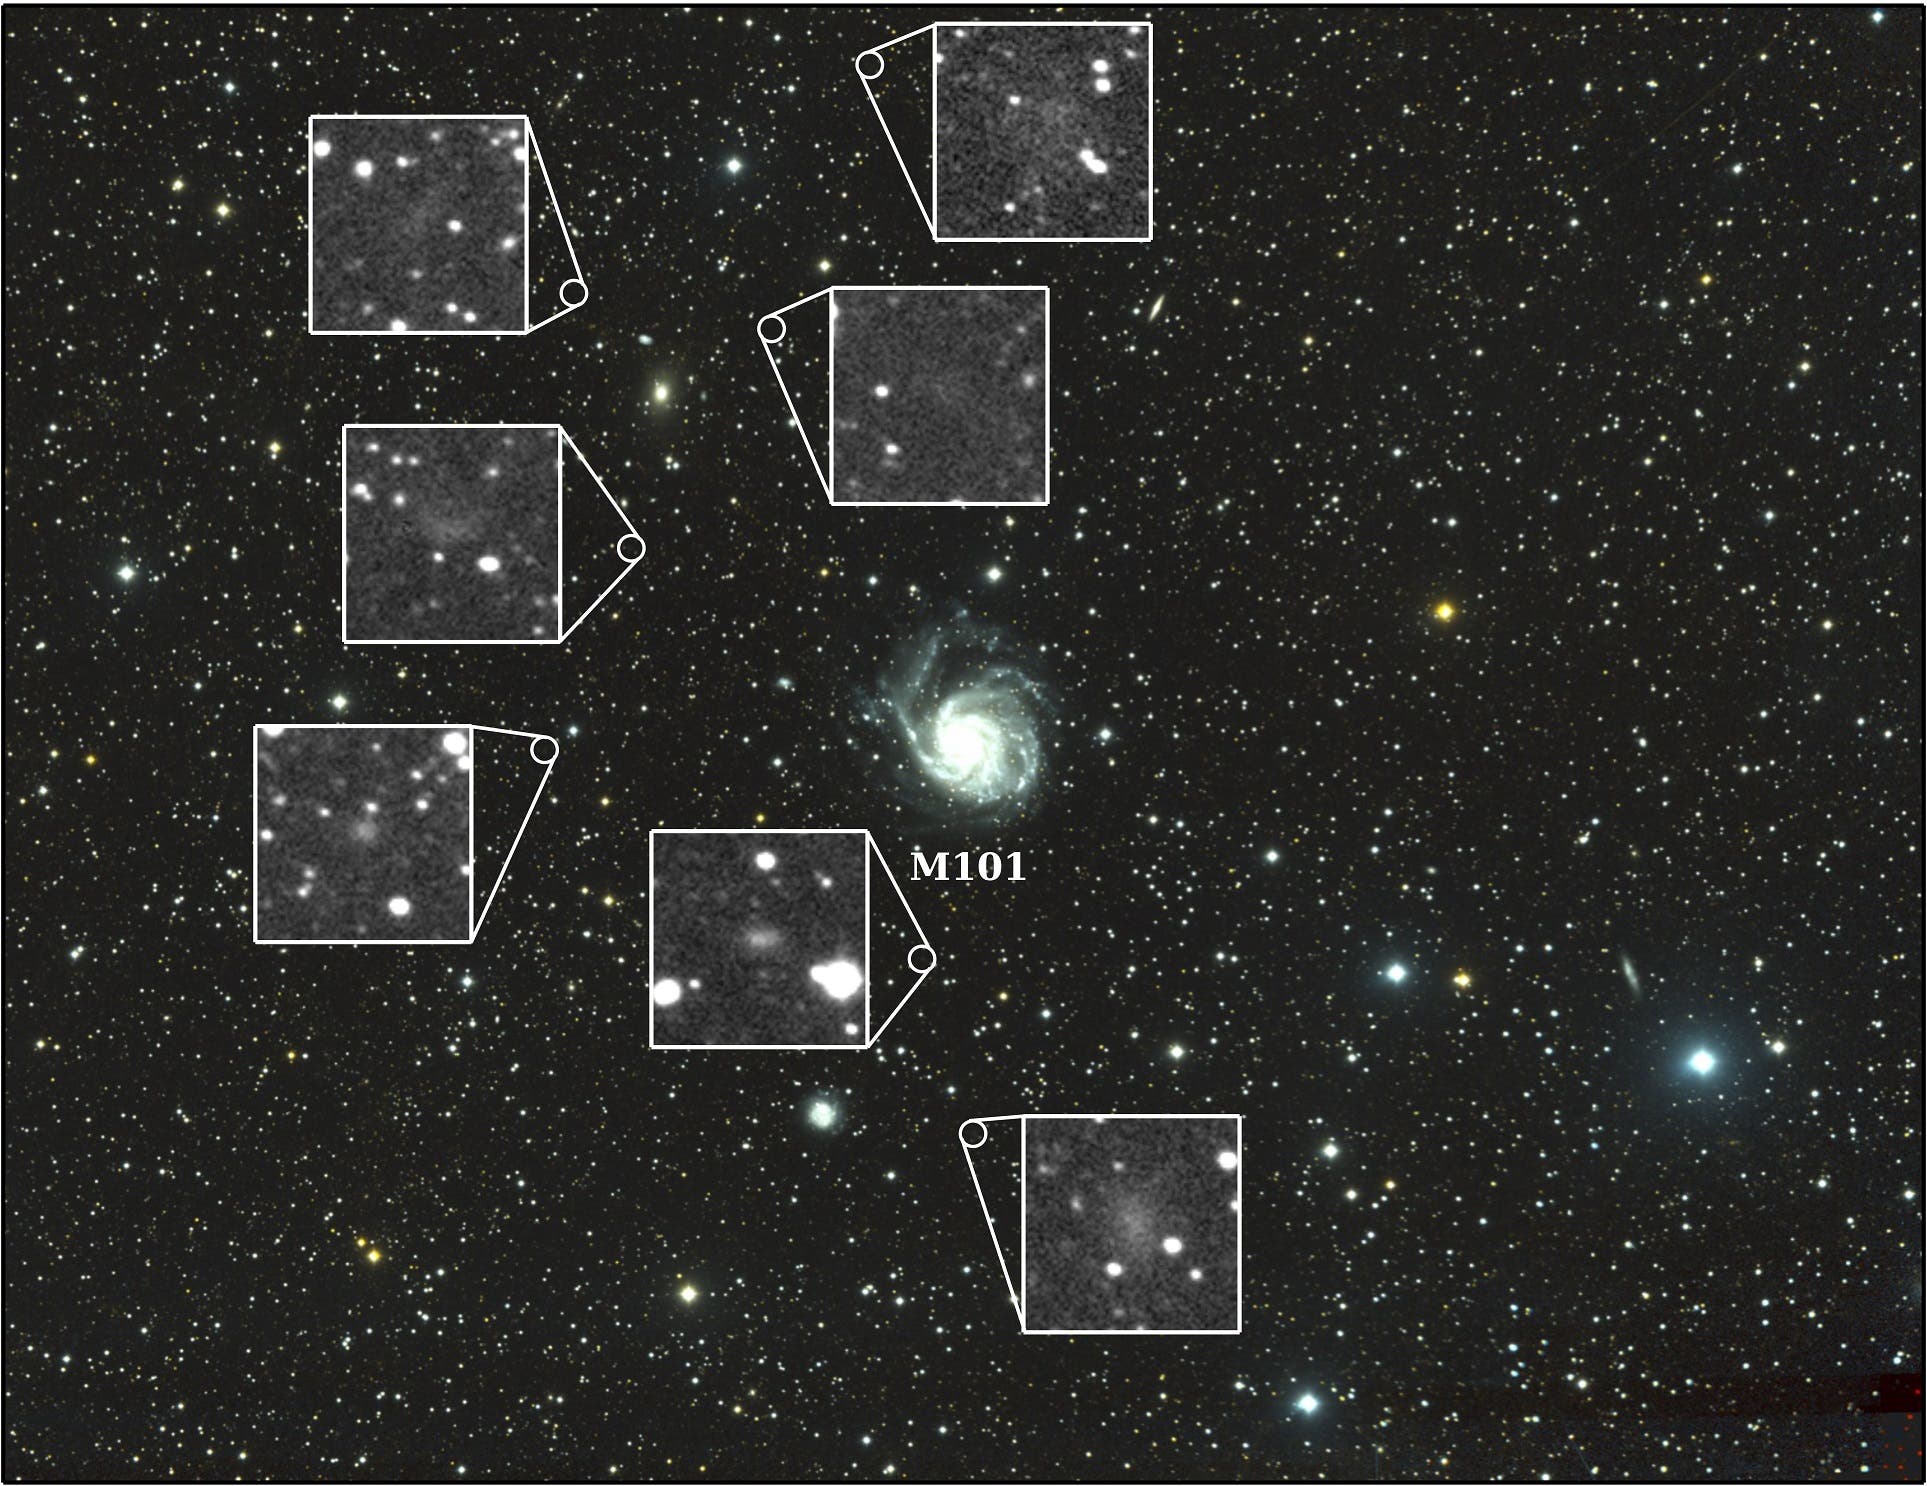 Die Umgebung der Spiralgalaxie Messier 101 im Sternbild Großer Bär (Aufnahme mit dem Dragonfly Telphoto Array)